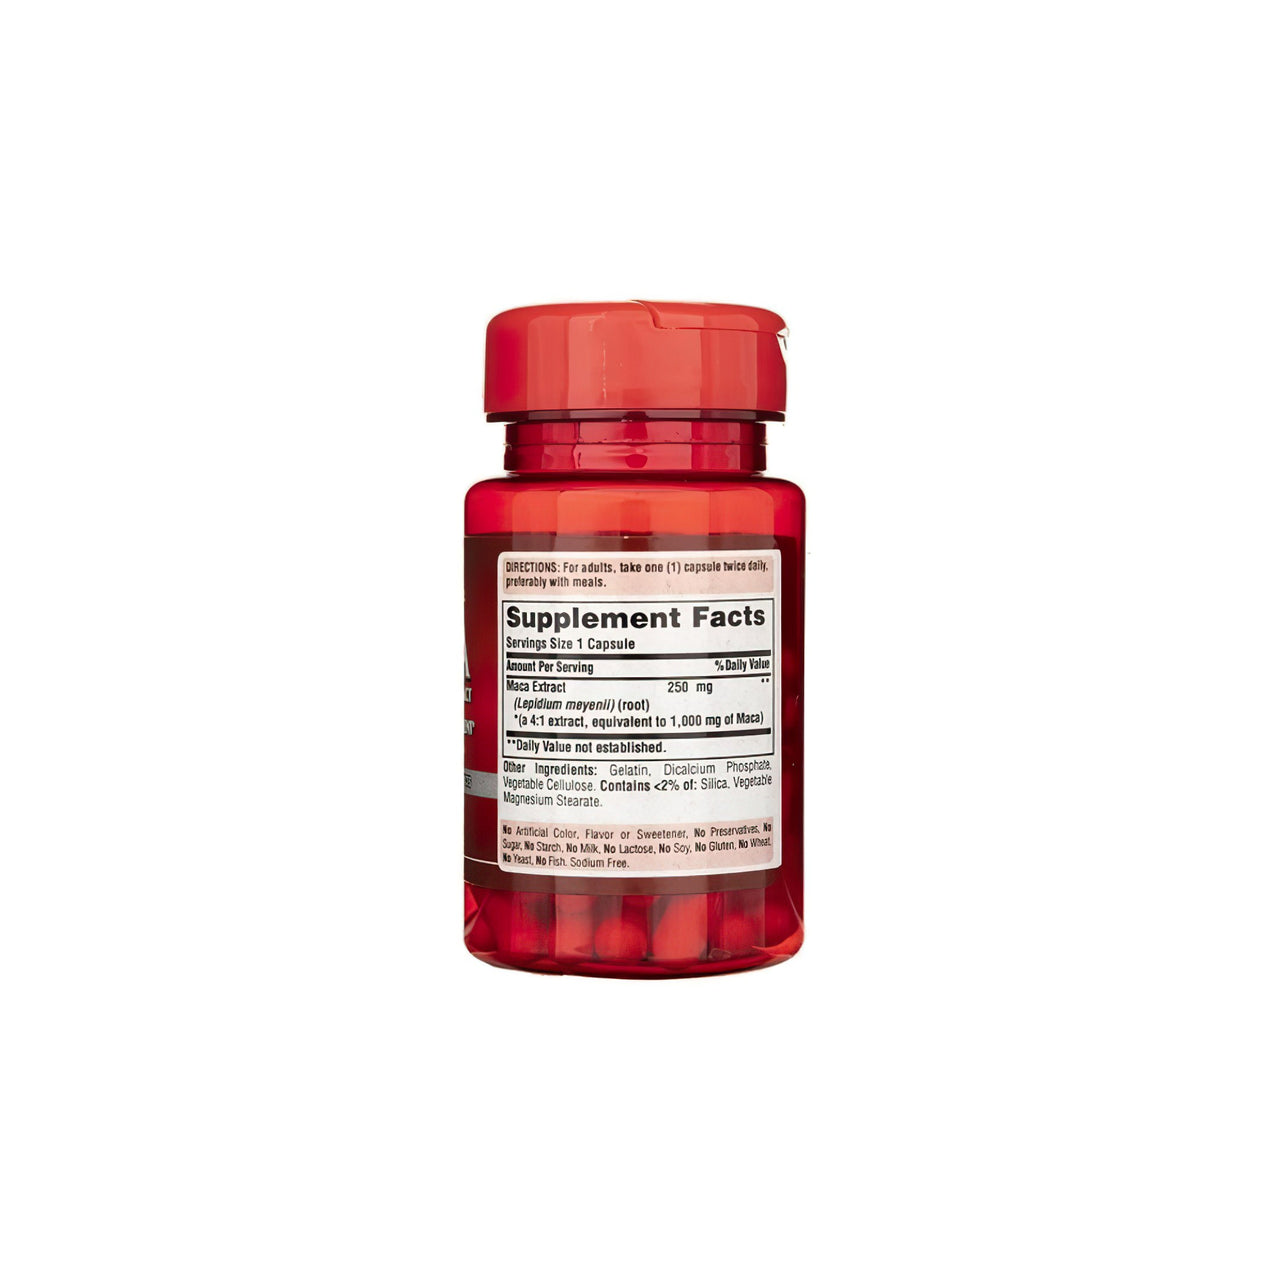 Eine Flasche Puritan's Pride Maca 1000 mg 60 Rapid Release Capsules auf einem weißen Hintergrund.